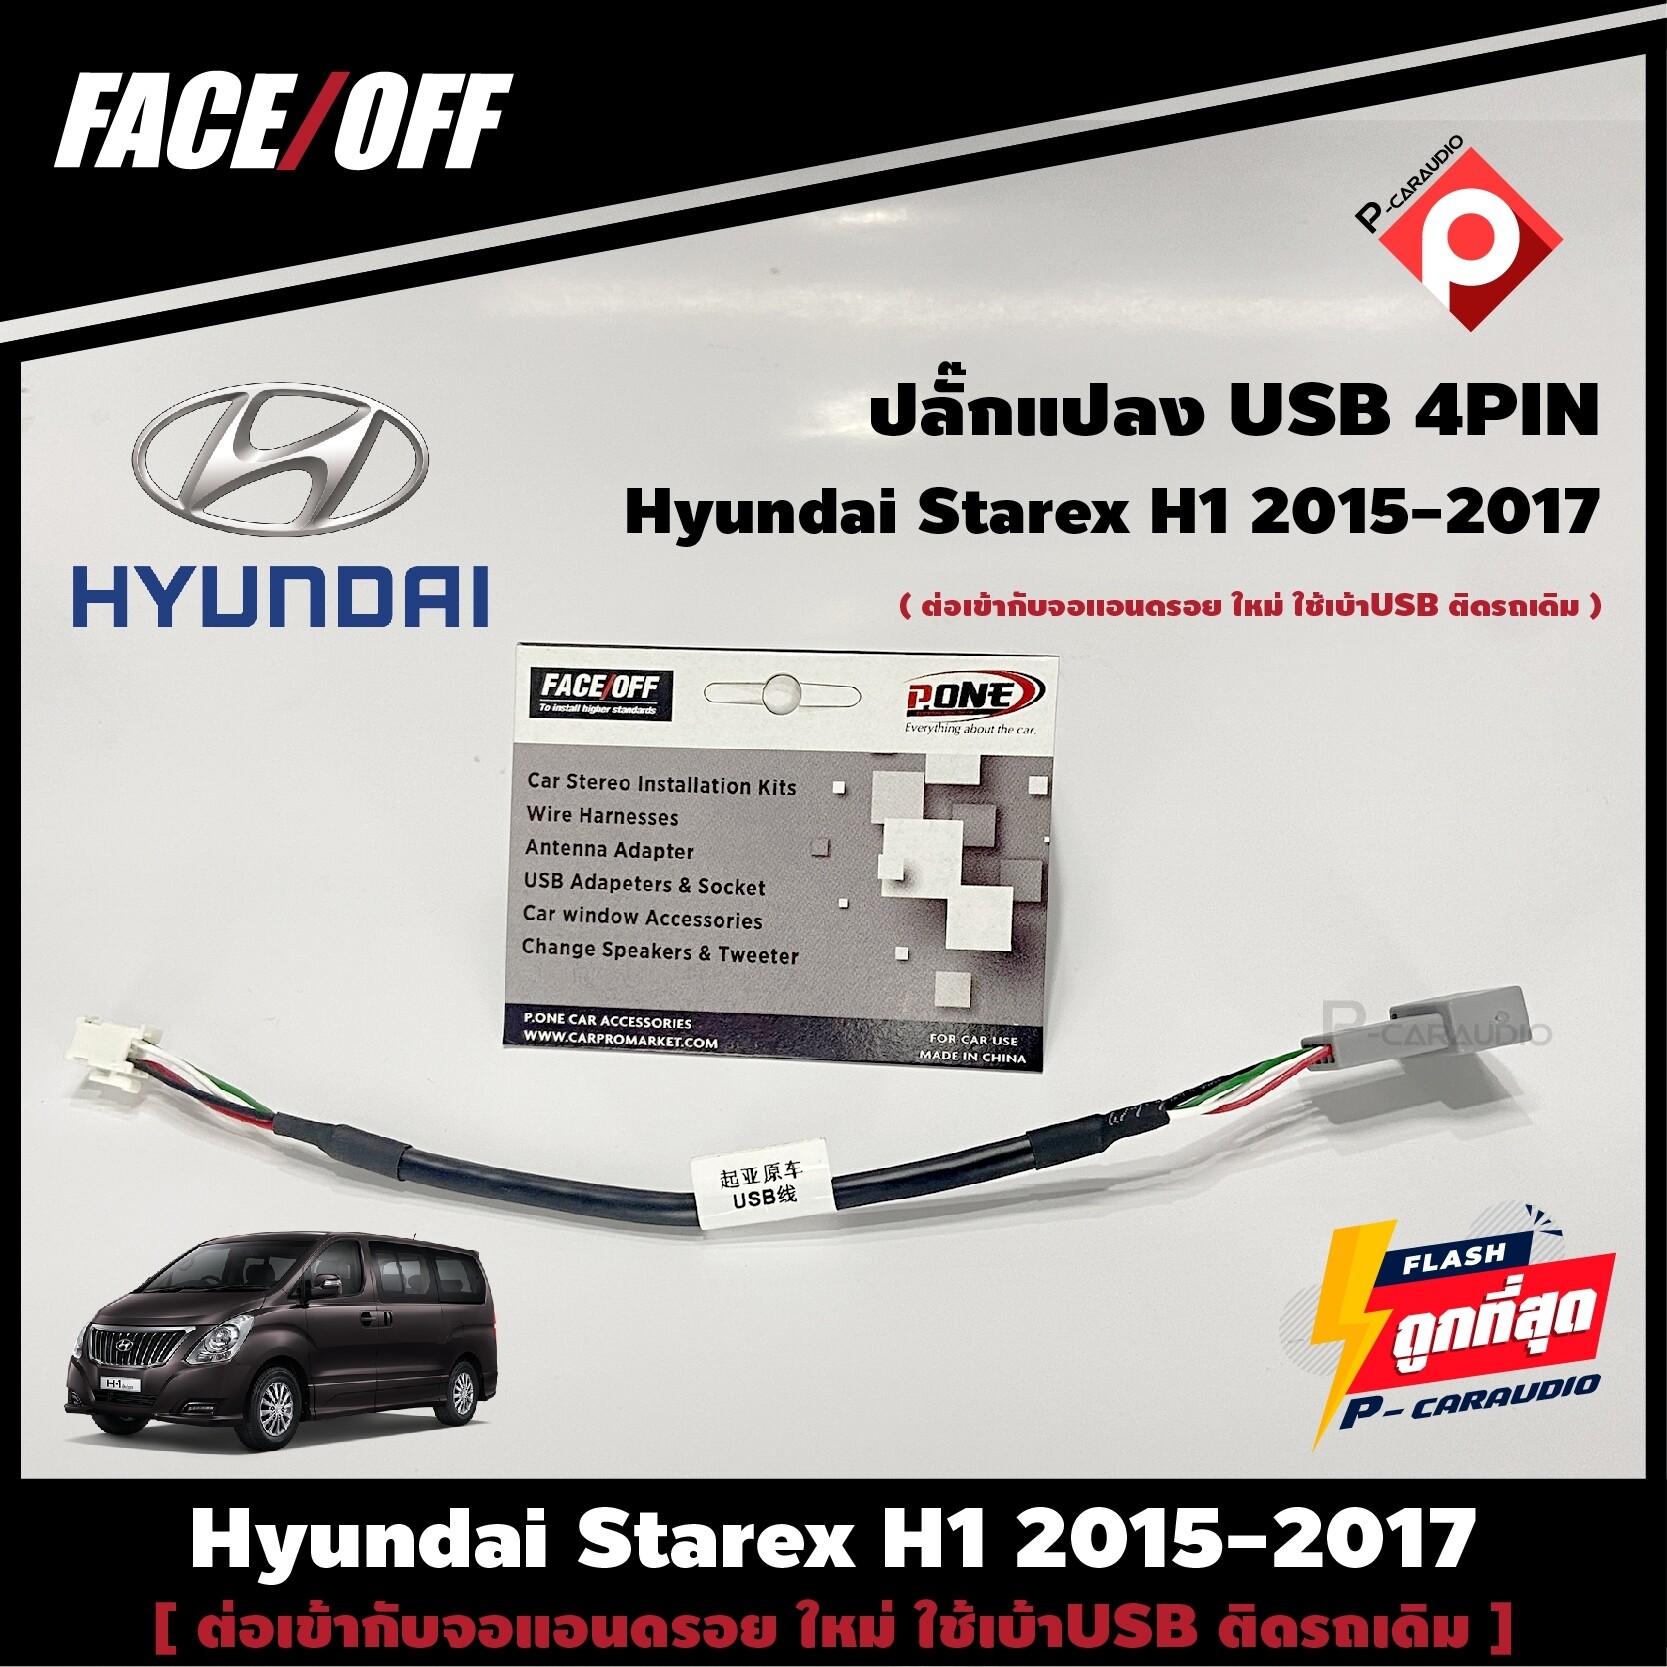 ปลั๊กแปลงหัว USB Hyundai Starex H1 2015-2017 เดิมติดรถเพื่อนำมาต่อเข้ากับจอแอนดรอยตัวใหม่ 4PIN เครื่องแอนดรอยใหม่ ใช้เบ้าUSB ติดรถเดิม